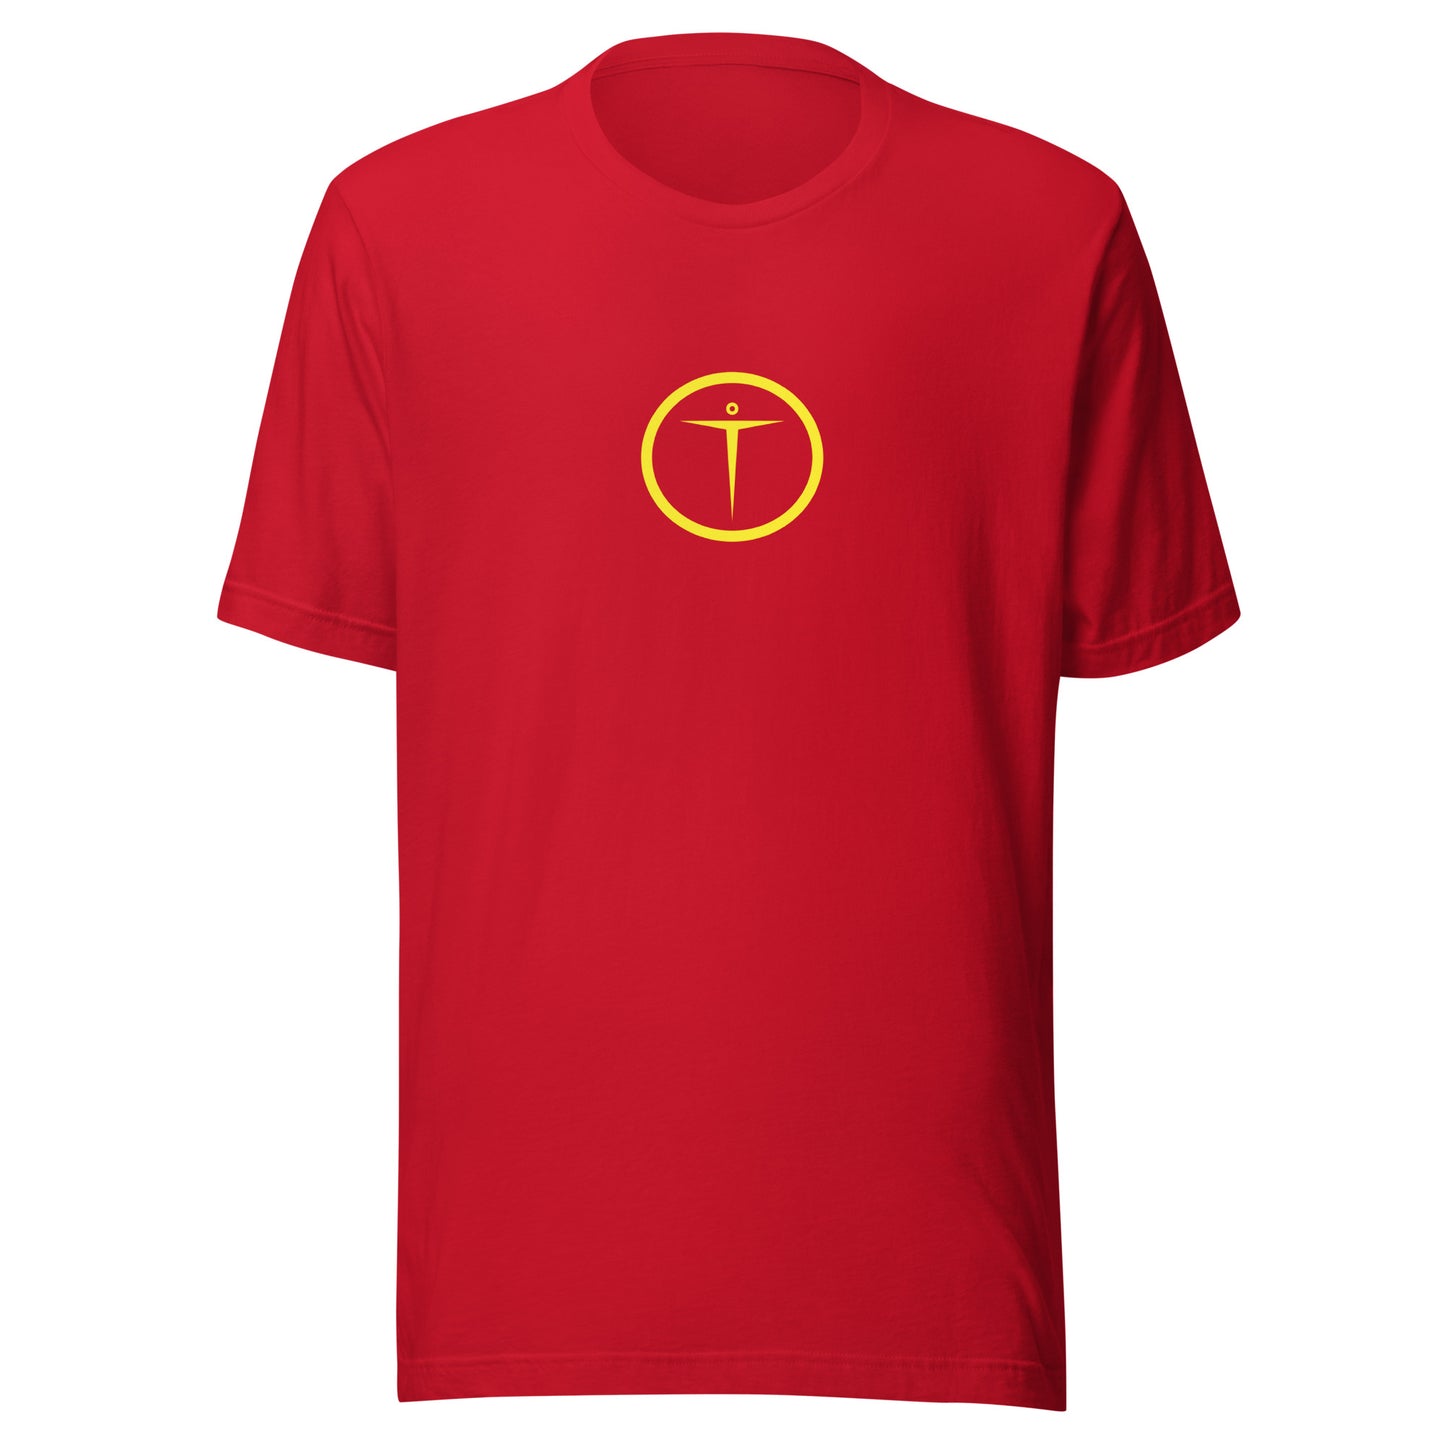 TORAYON (Y) Unisex t-shirt